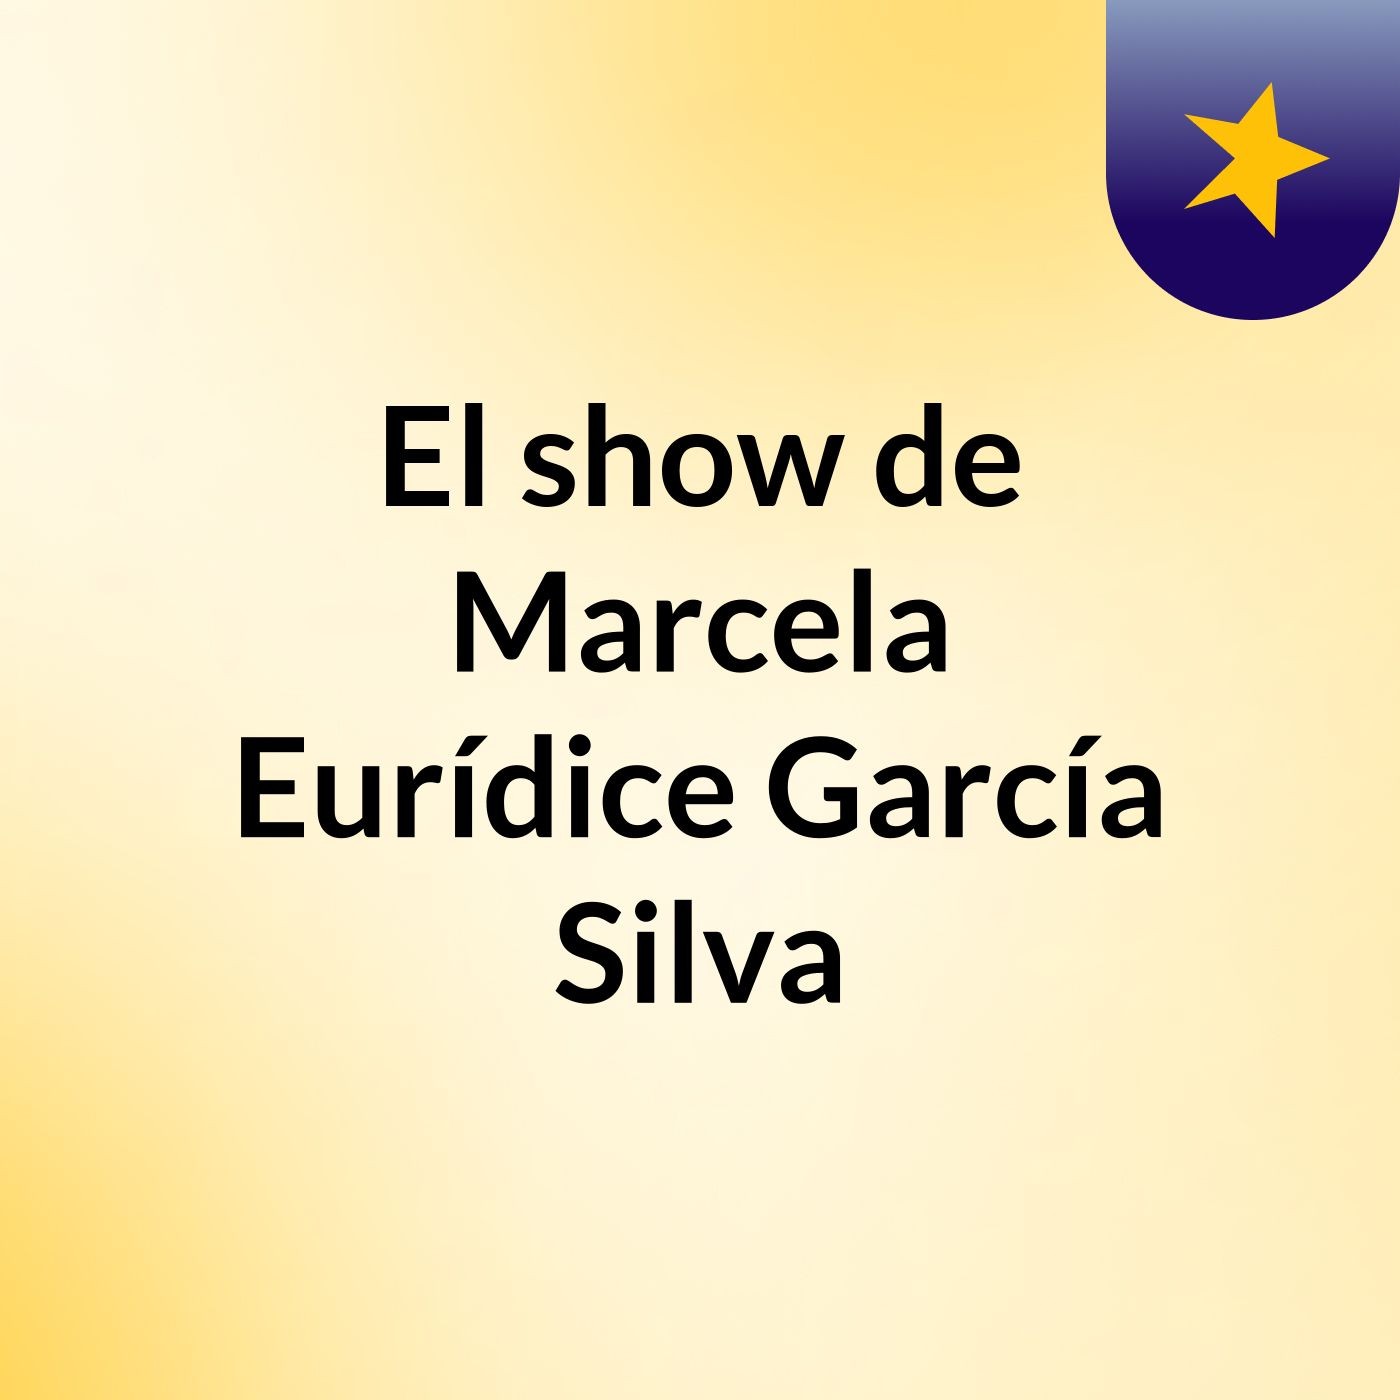 El show de Marcela Eurídice García Silva